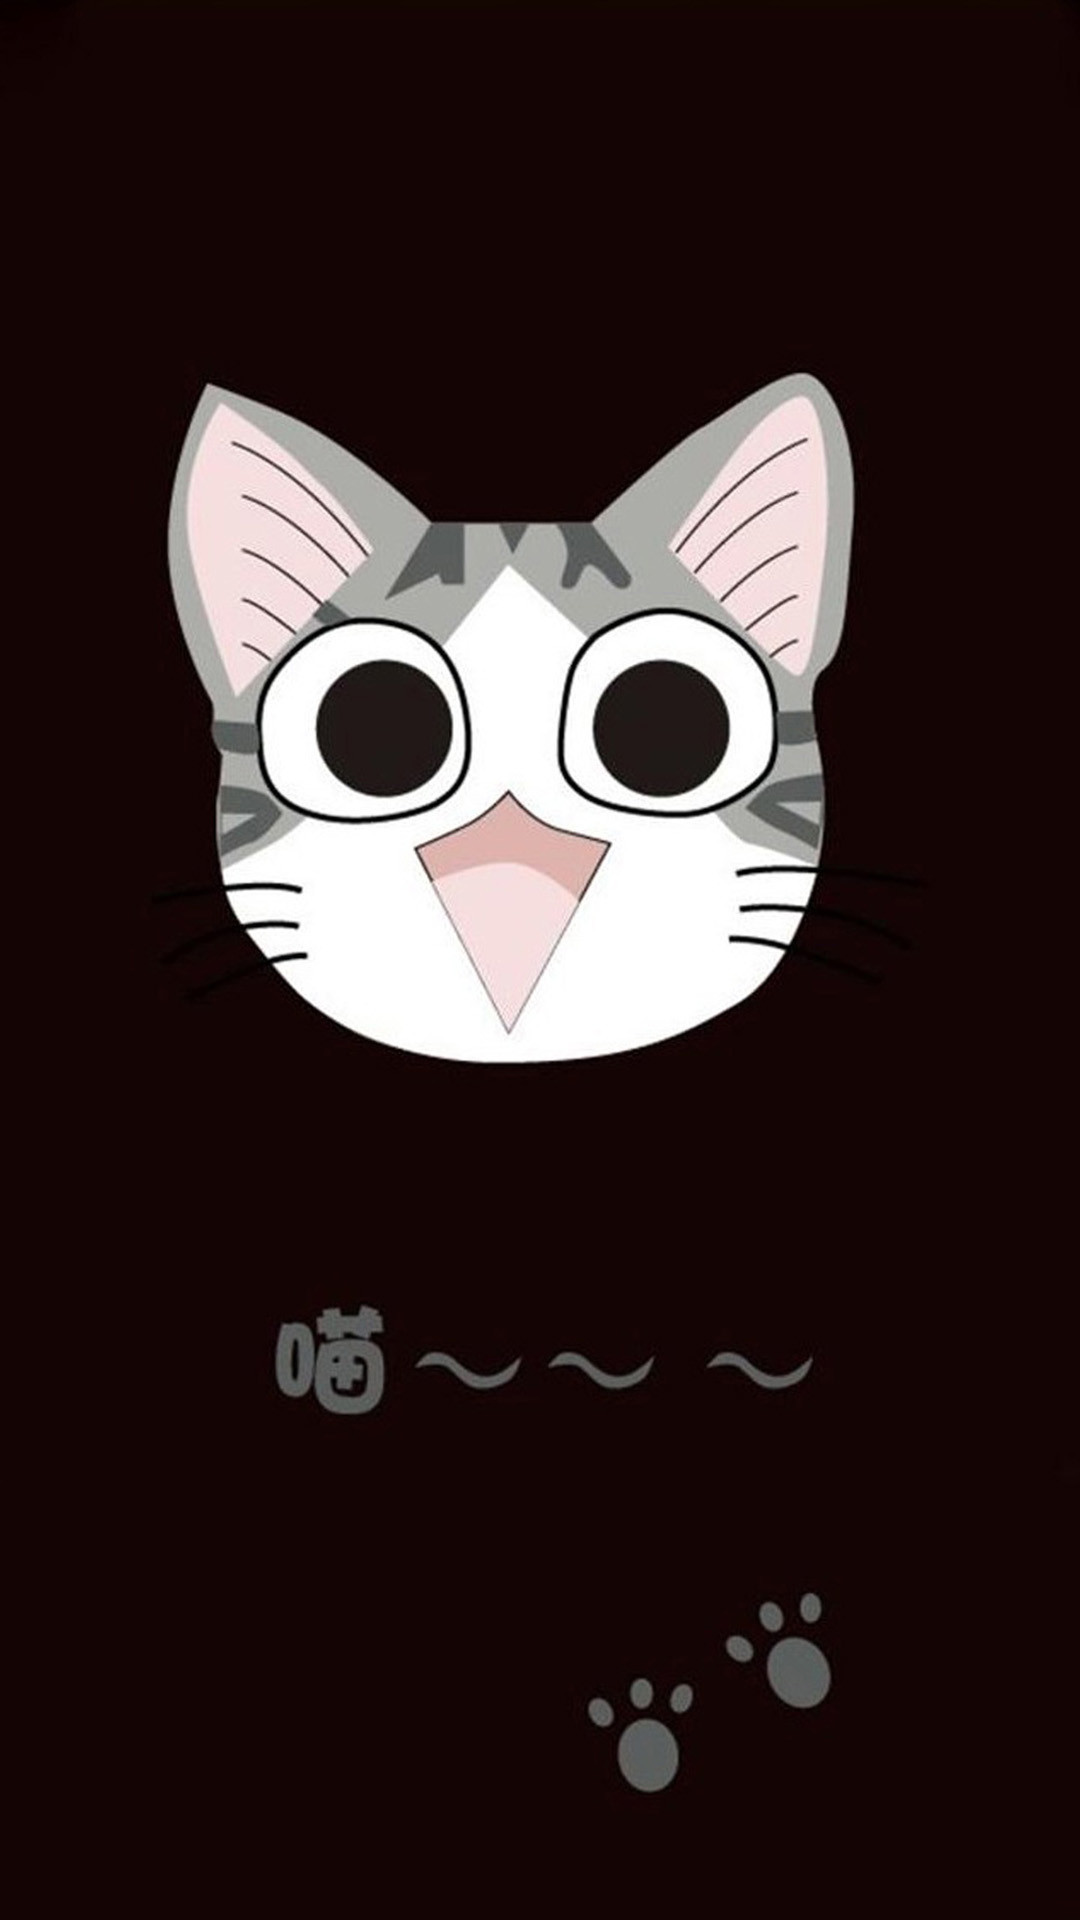 1080x1920 Cute cat cartoon 06 Galaxy S5 Wallpapers 